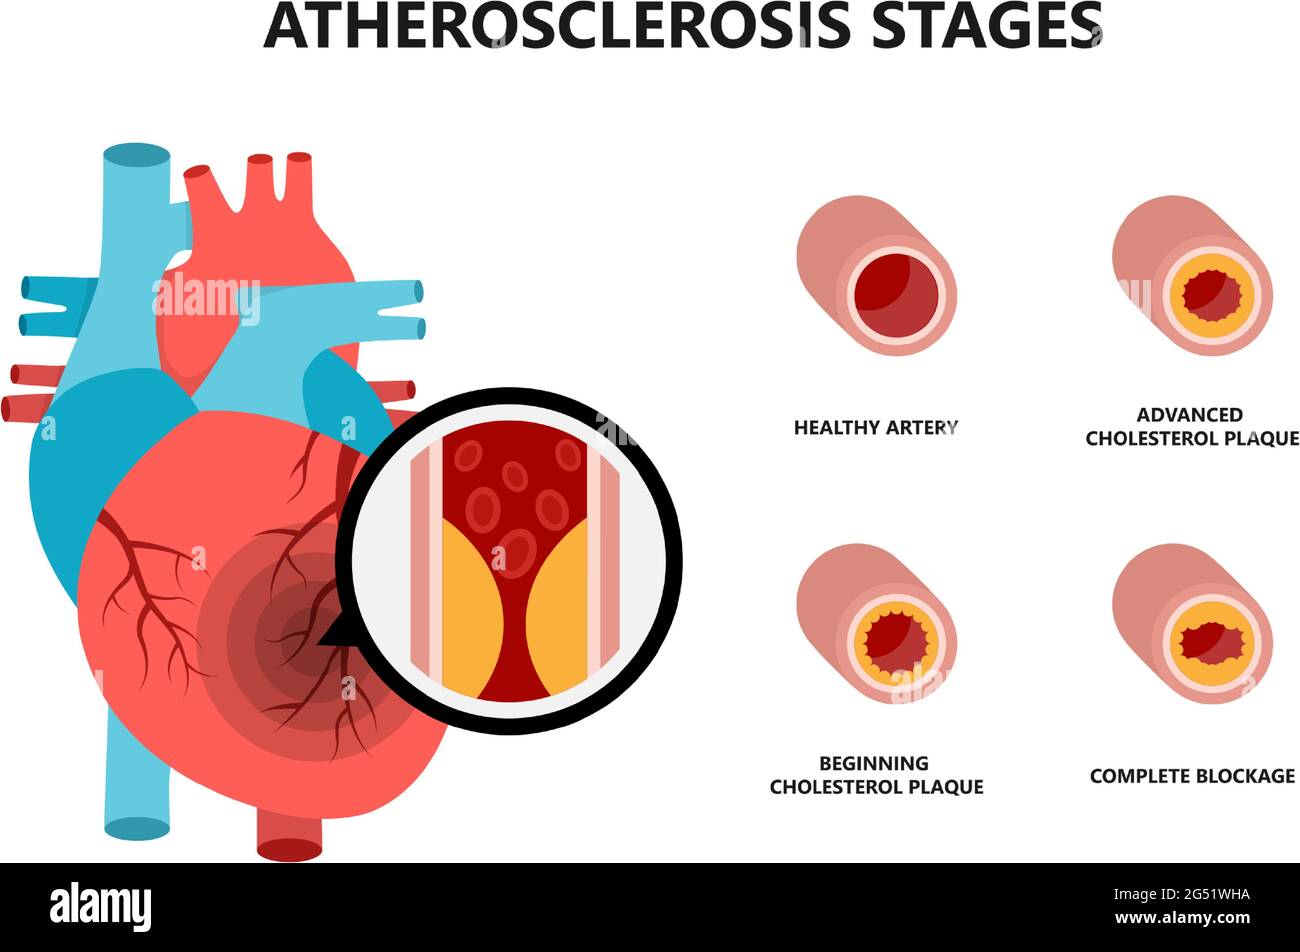 Anatomie du cœur humain avec plaque athérosclérotique. Plaque de cholestérol dans les vaisseaux sanguins. Illustration de Vecteur